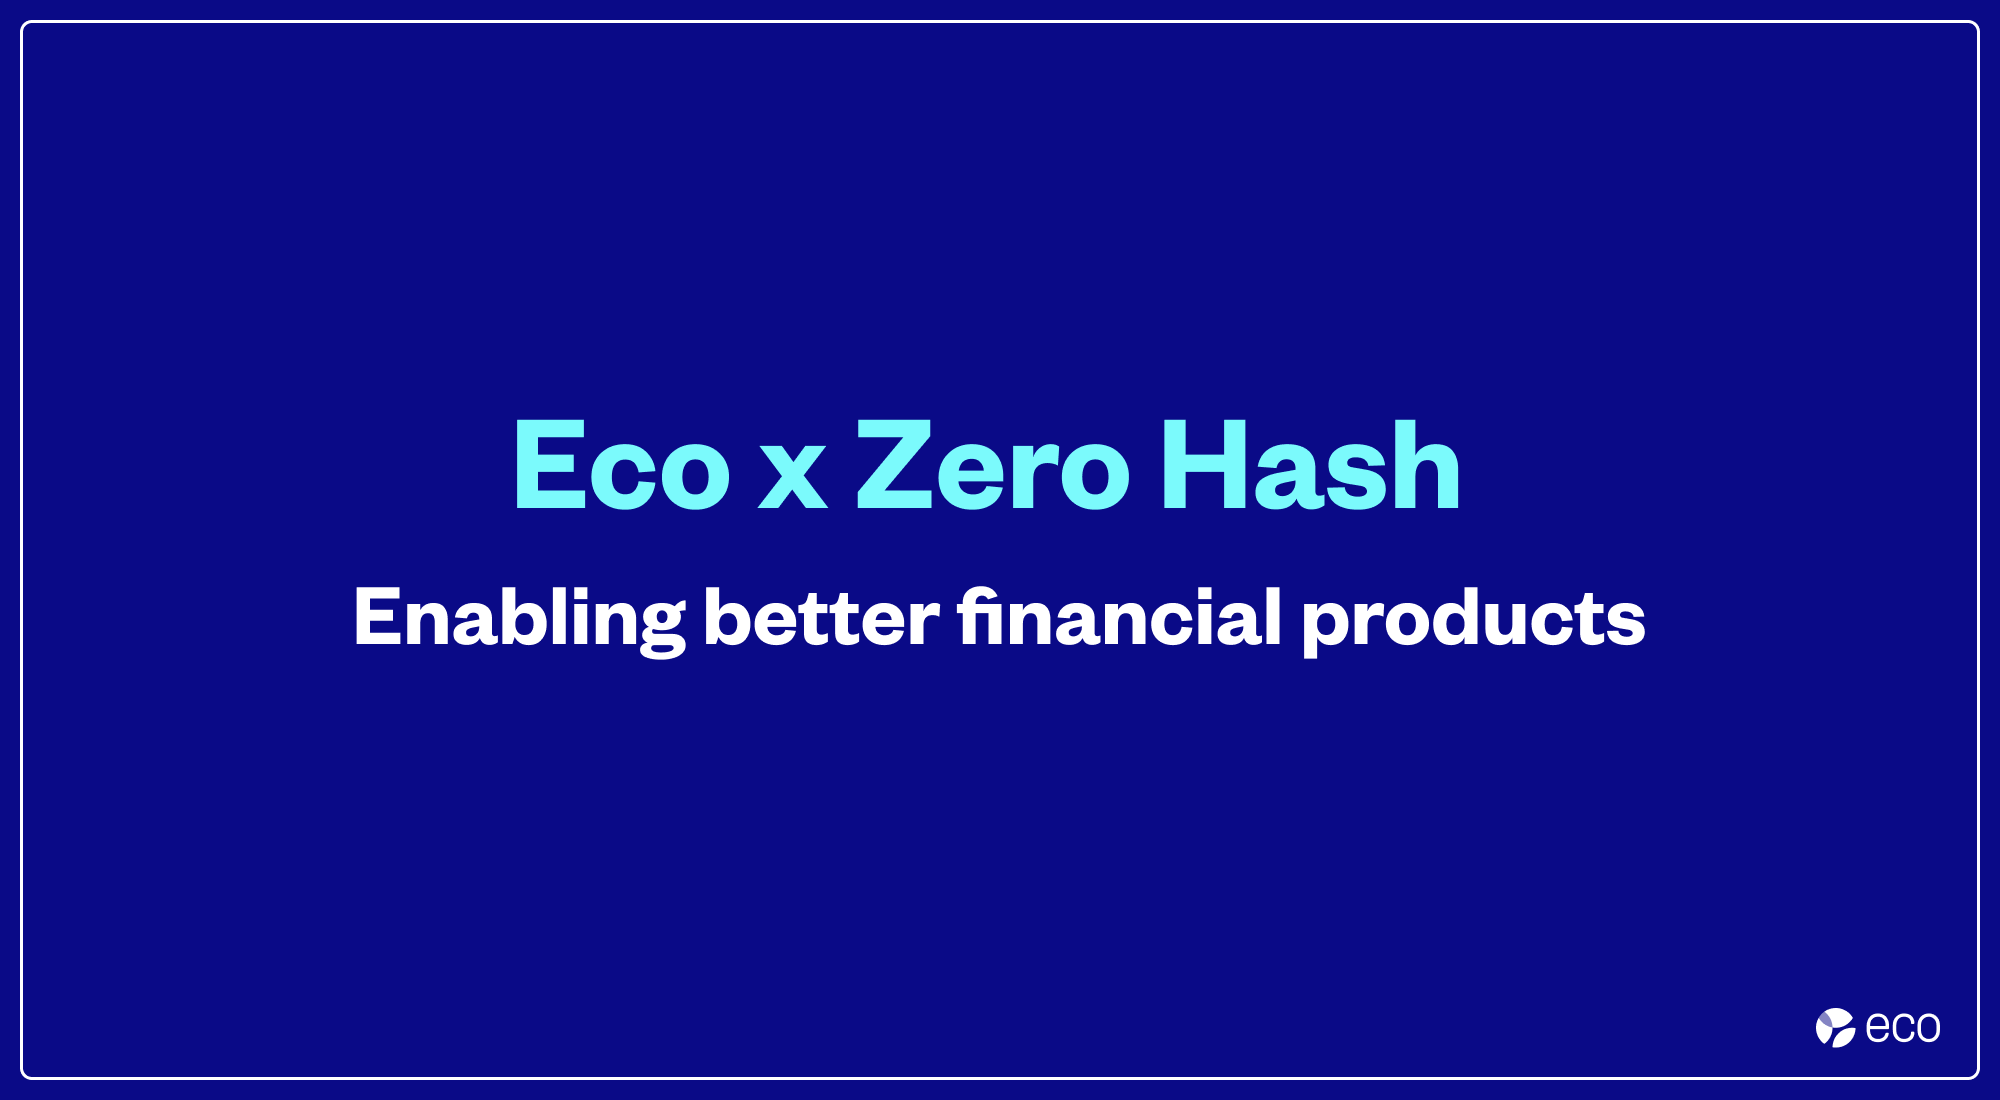 Eco x Zero Hash